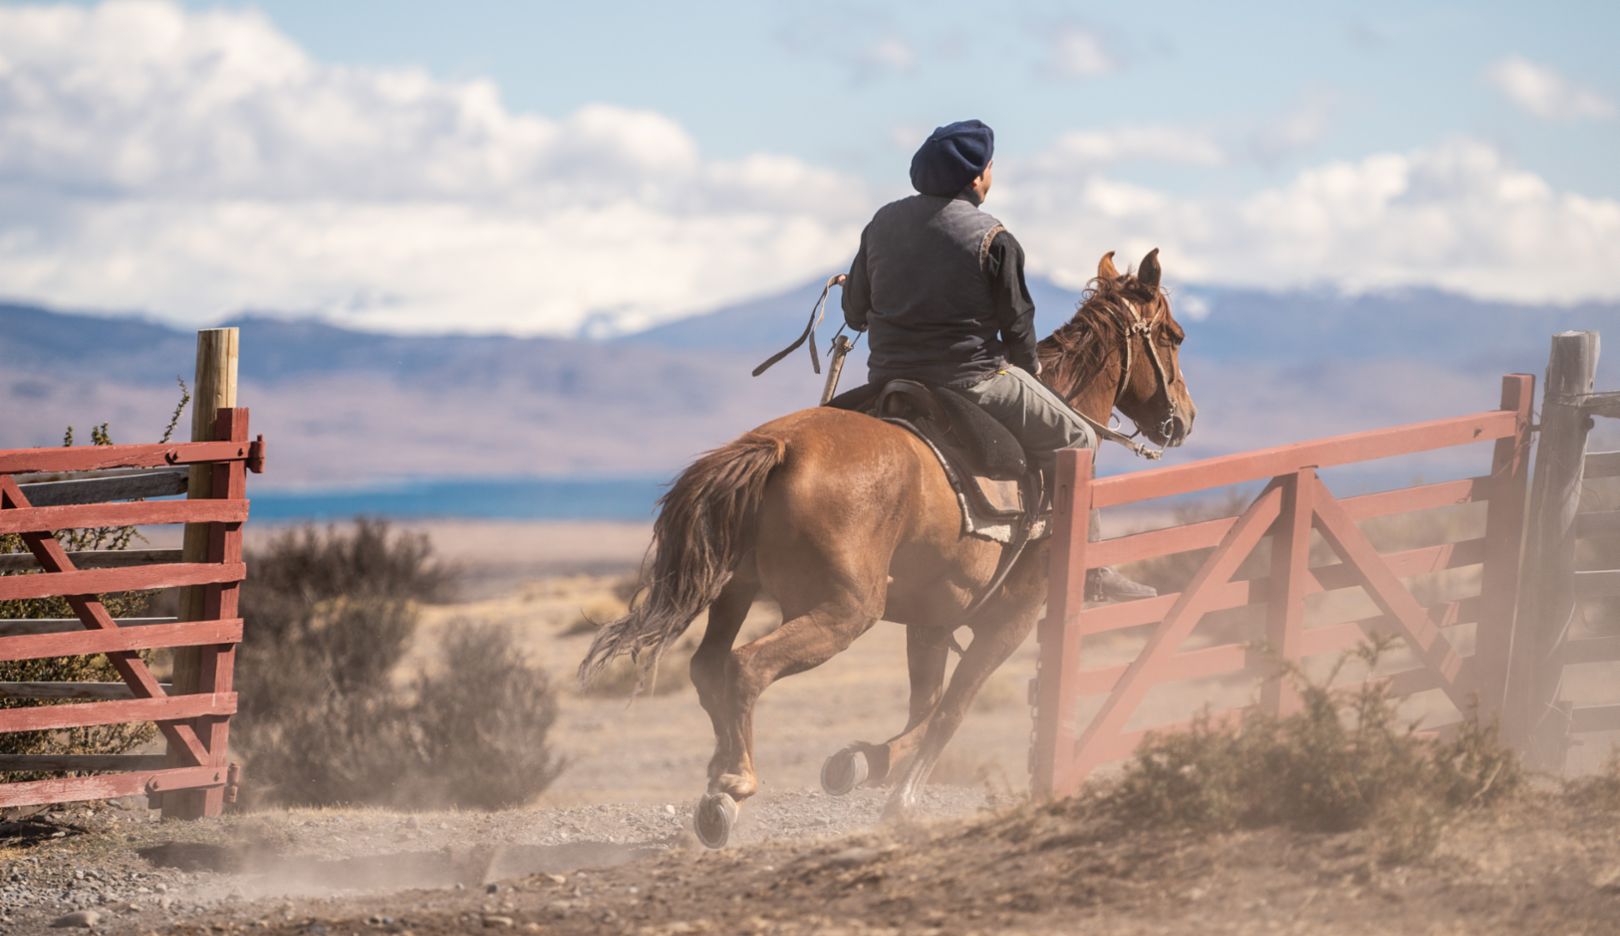 Como em outros tempos: Um gaúcho da Estancia Cerro Guido cavalga no deserto.